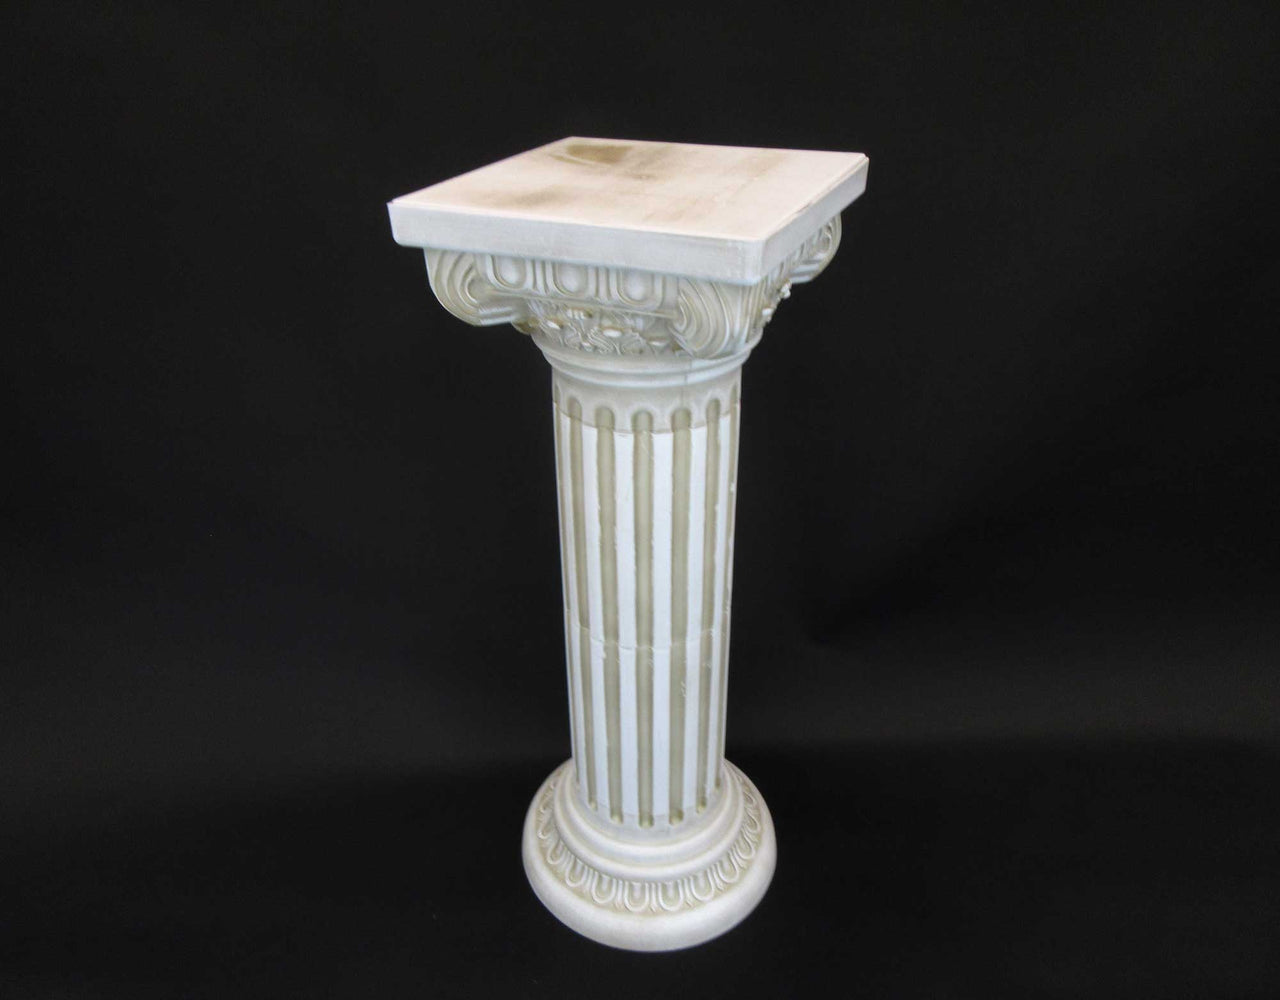 HCHD5659 - Cream Tall Roman Pedestal